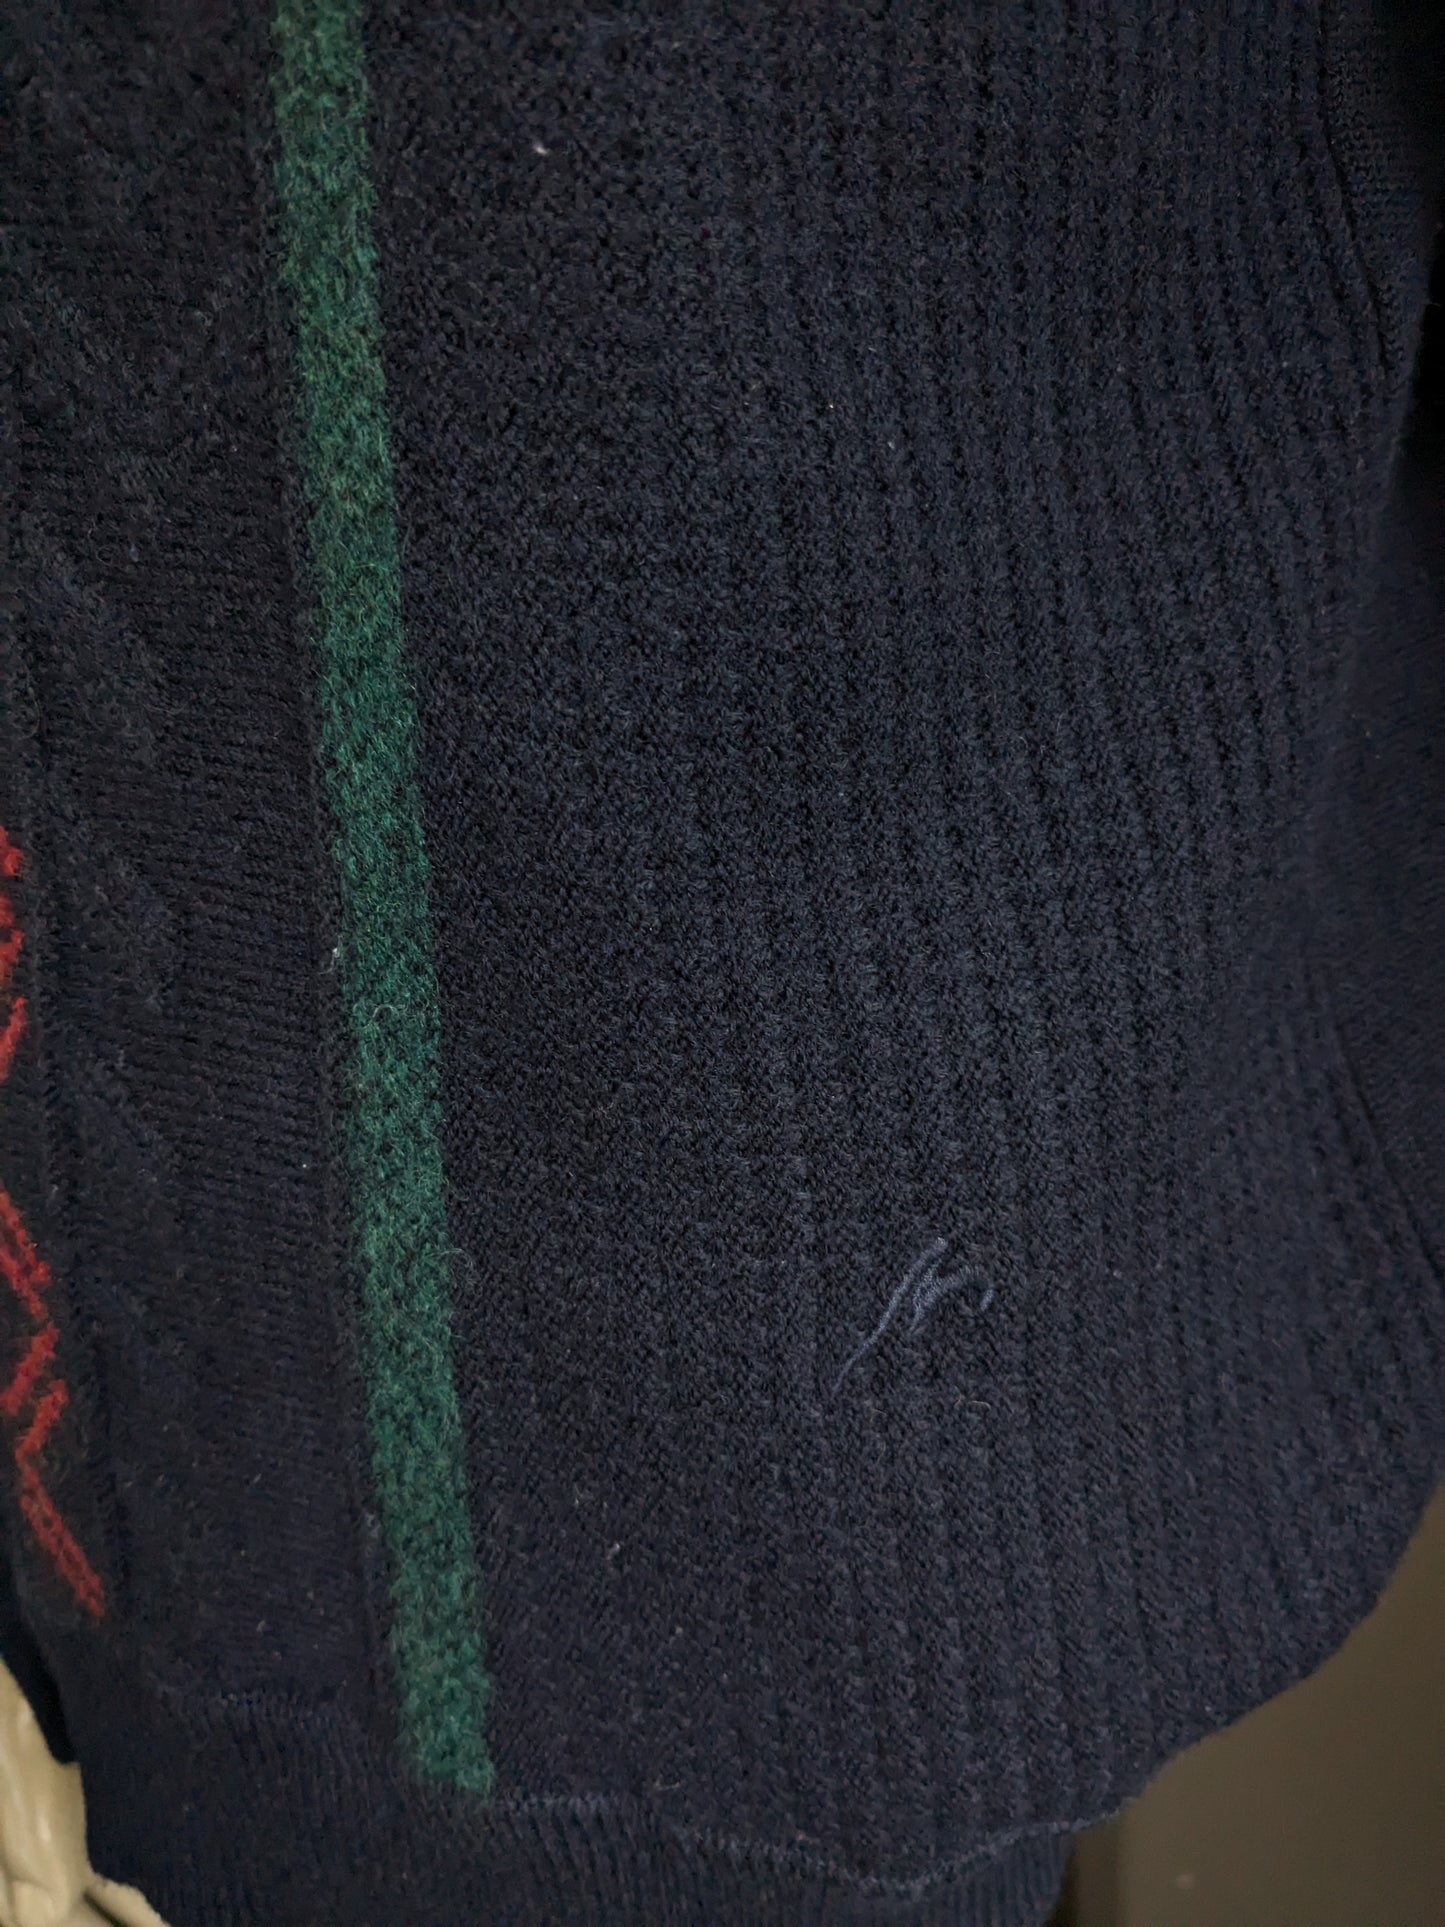 Vintage Maselli Wolle-Pullover mit V-Ausschnitt. Dunkelblau mit gelb rotgrün blauem Motiv. Größe L.